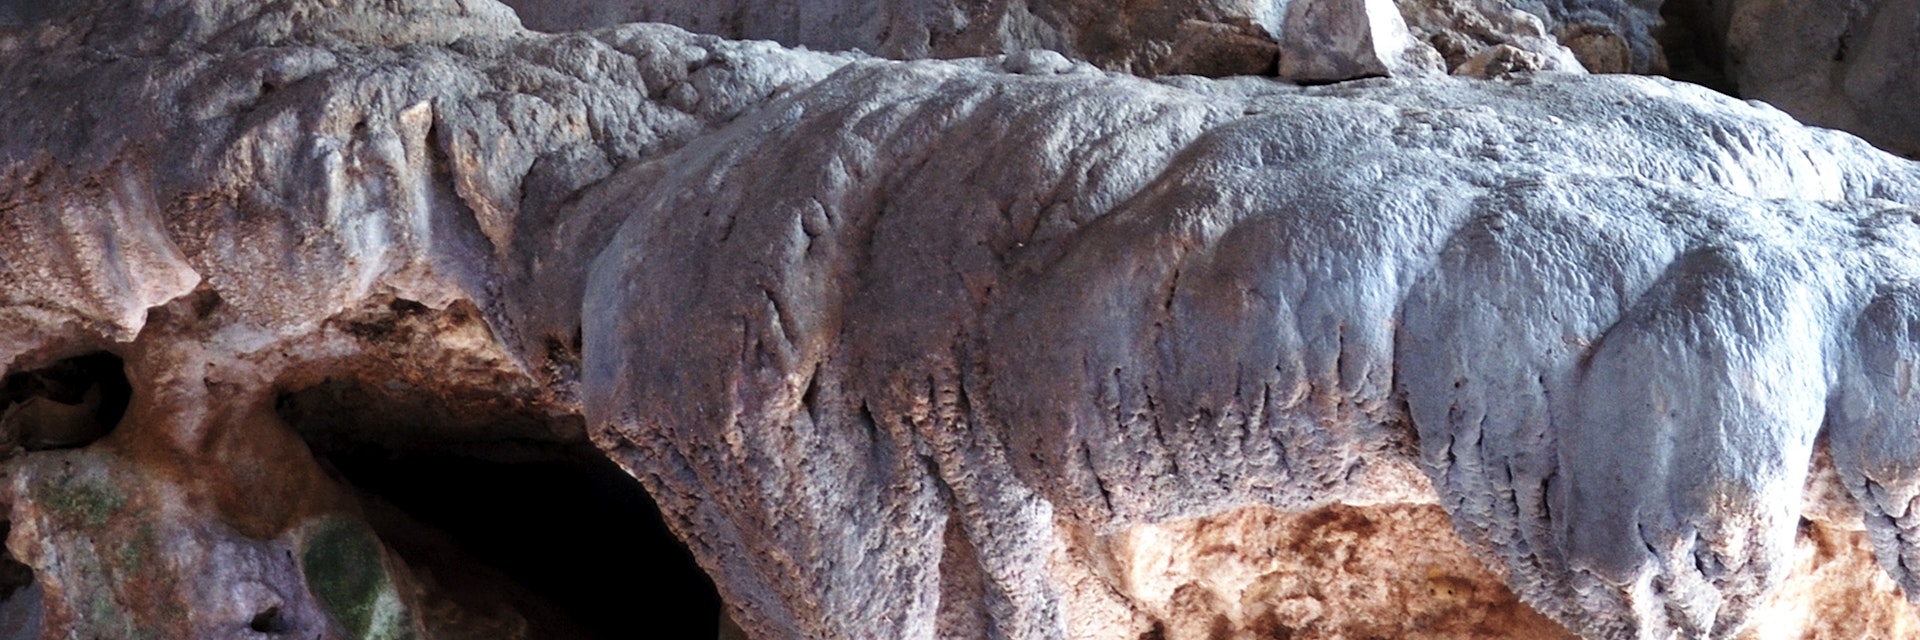 Elephant-shaped stalagmite, Tham Sang.